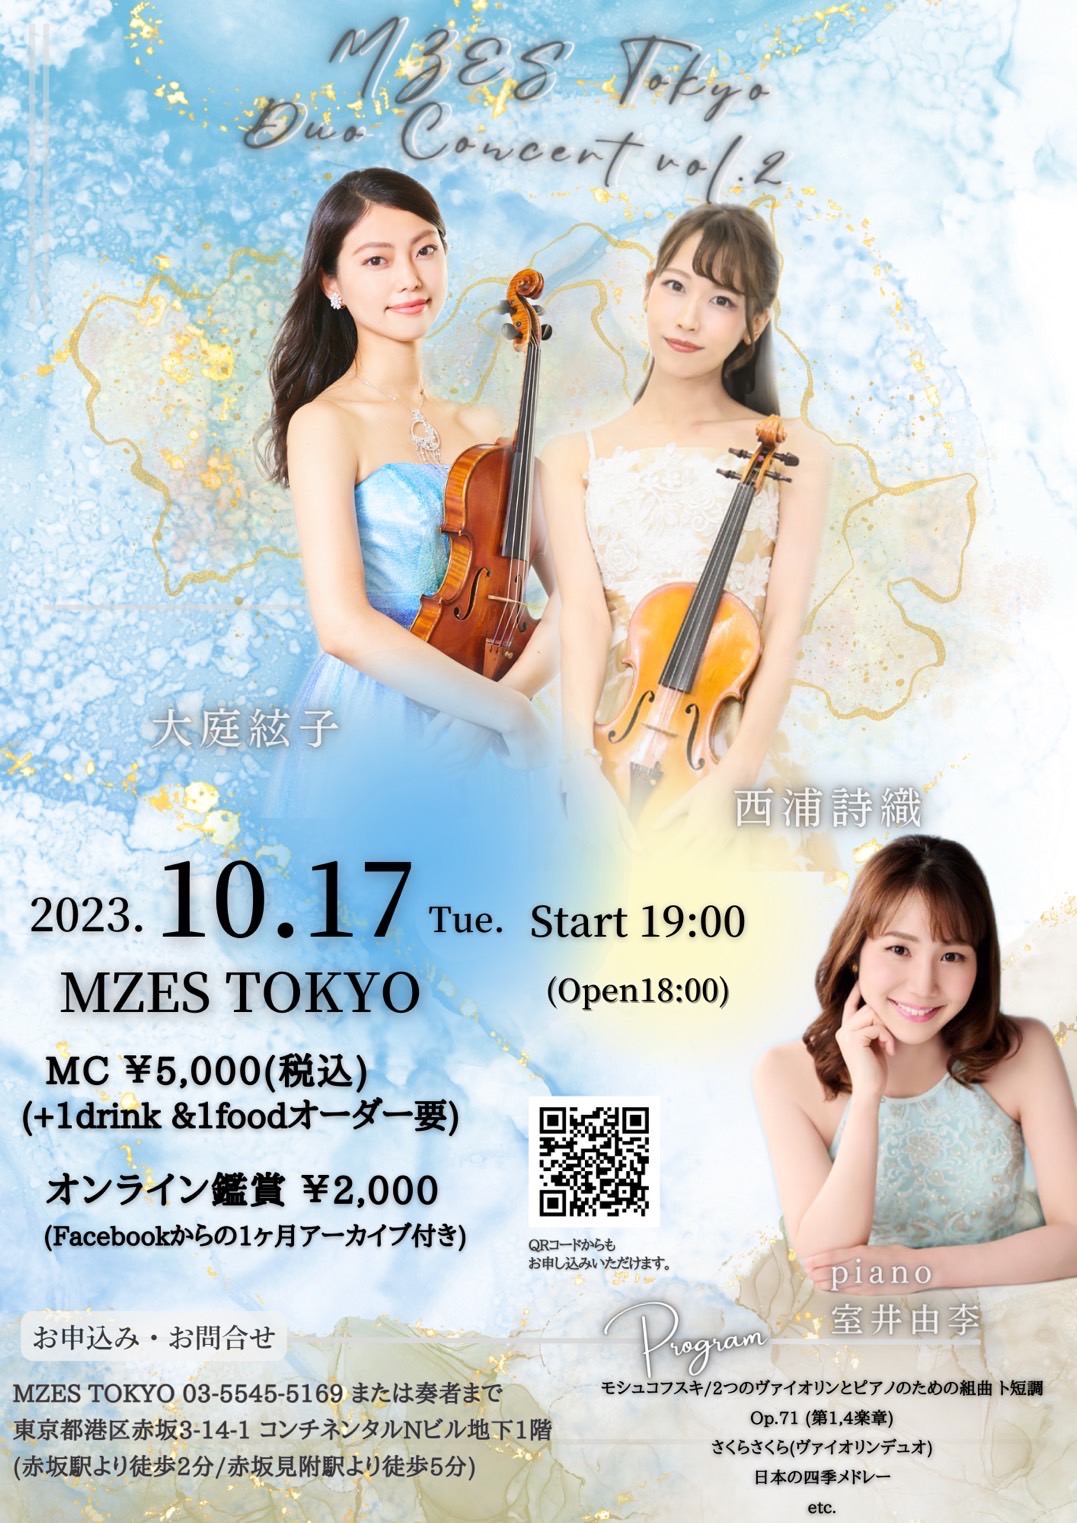 Duo Concert vol.2